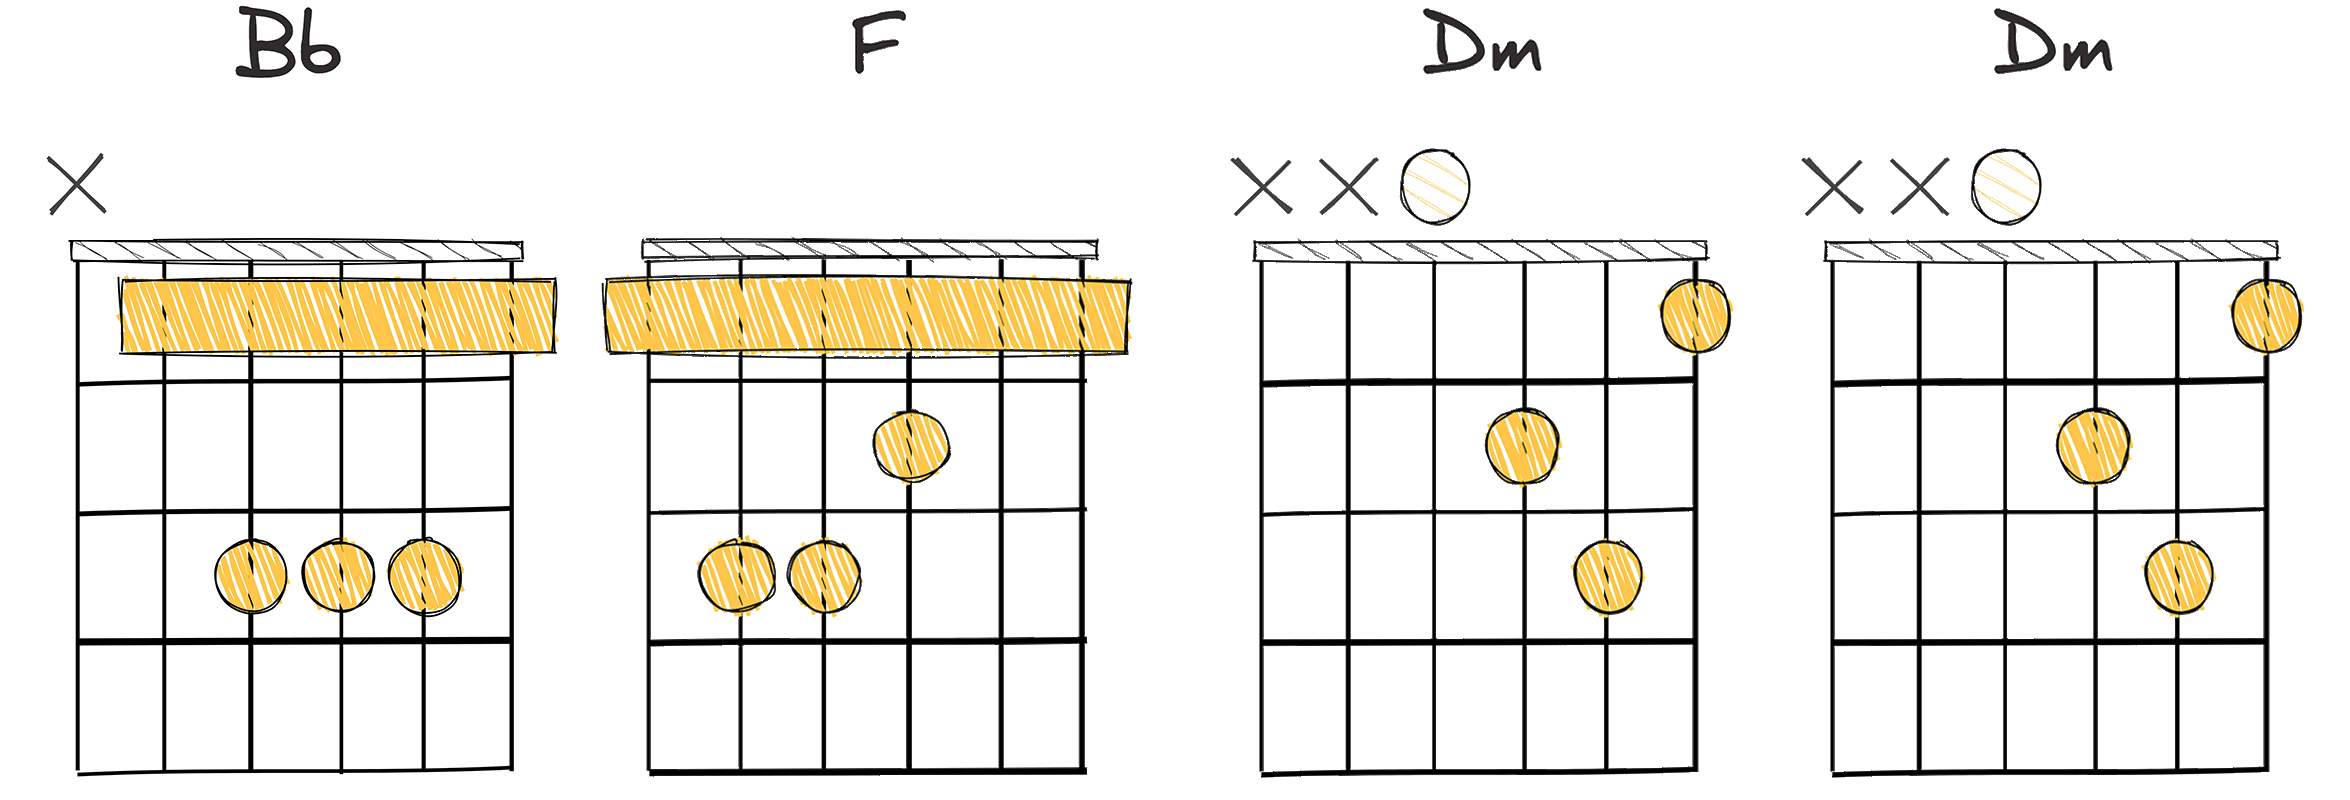 IV-I-vi-vi (4-1-6-6) chords diagram